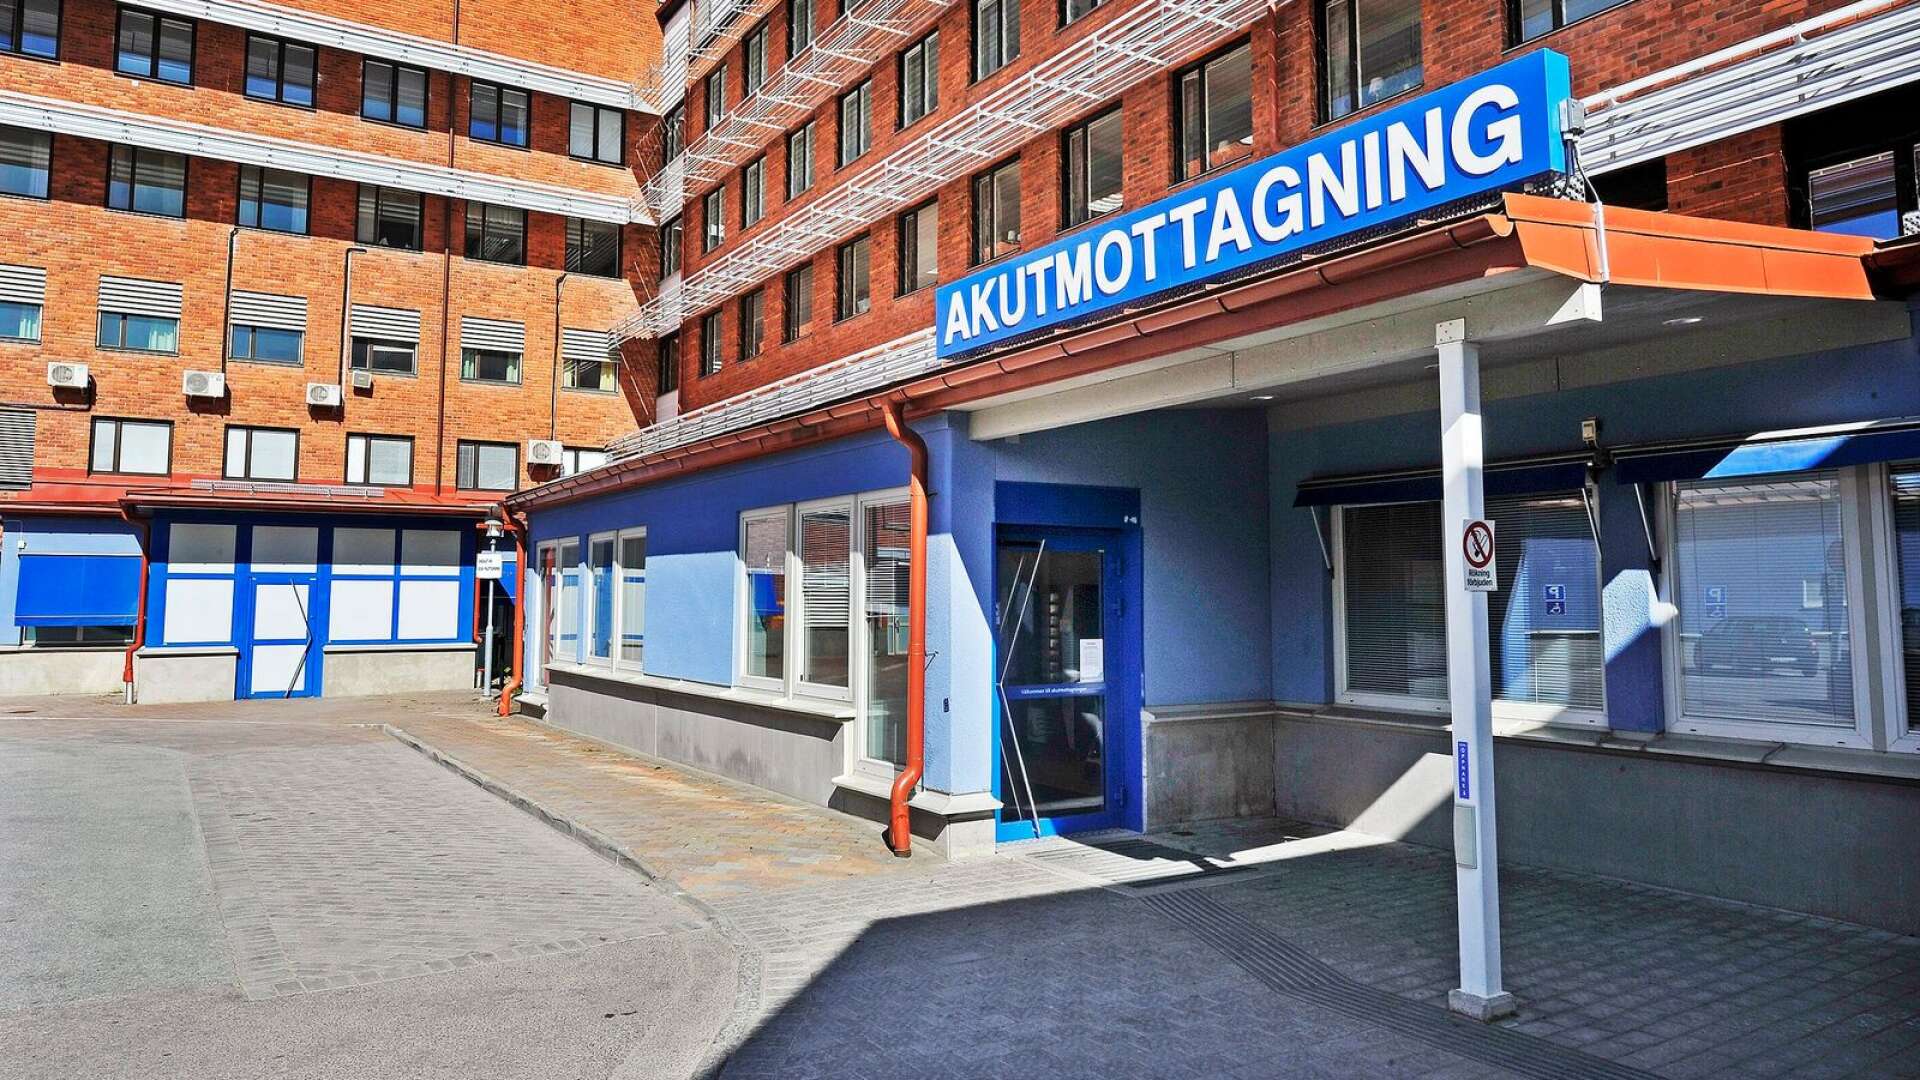 Akutmottagningen på Centralsjukhuset i Karlstad anser sig ha ett gynnsamt läge inför sommaren, som annars brukar vara trasslig och svår att få ihop.